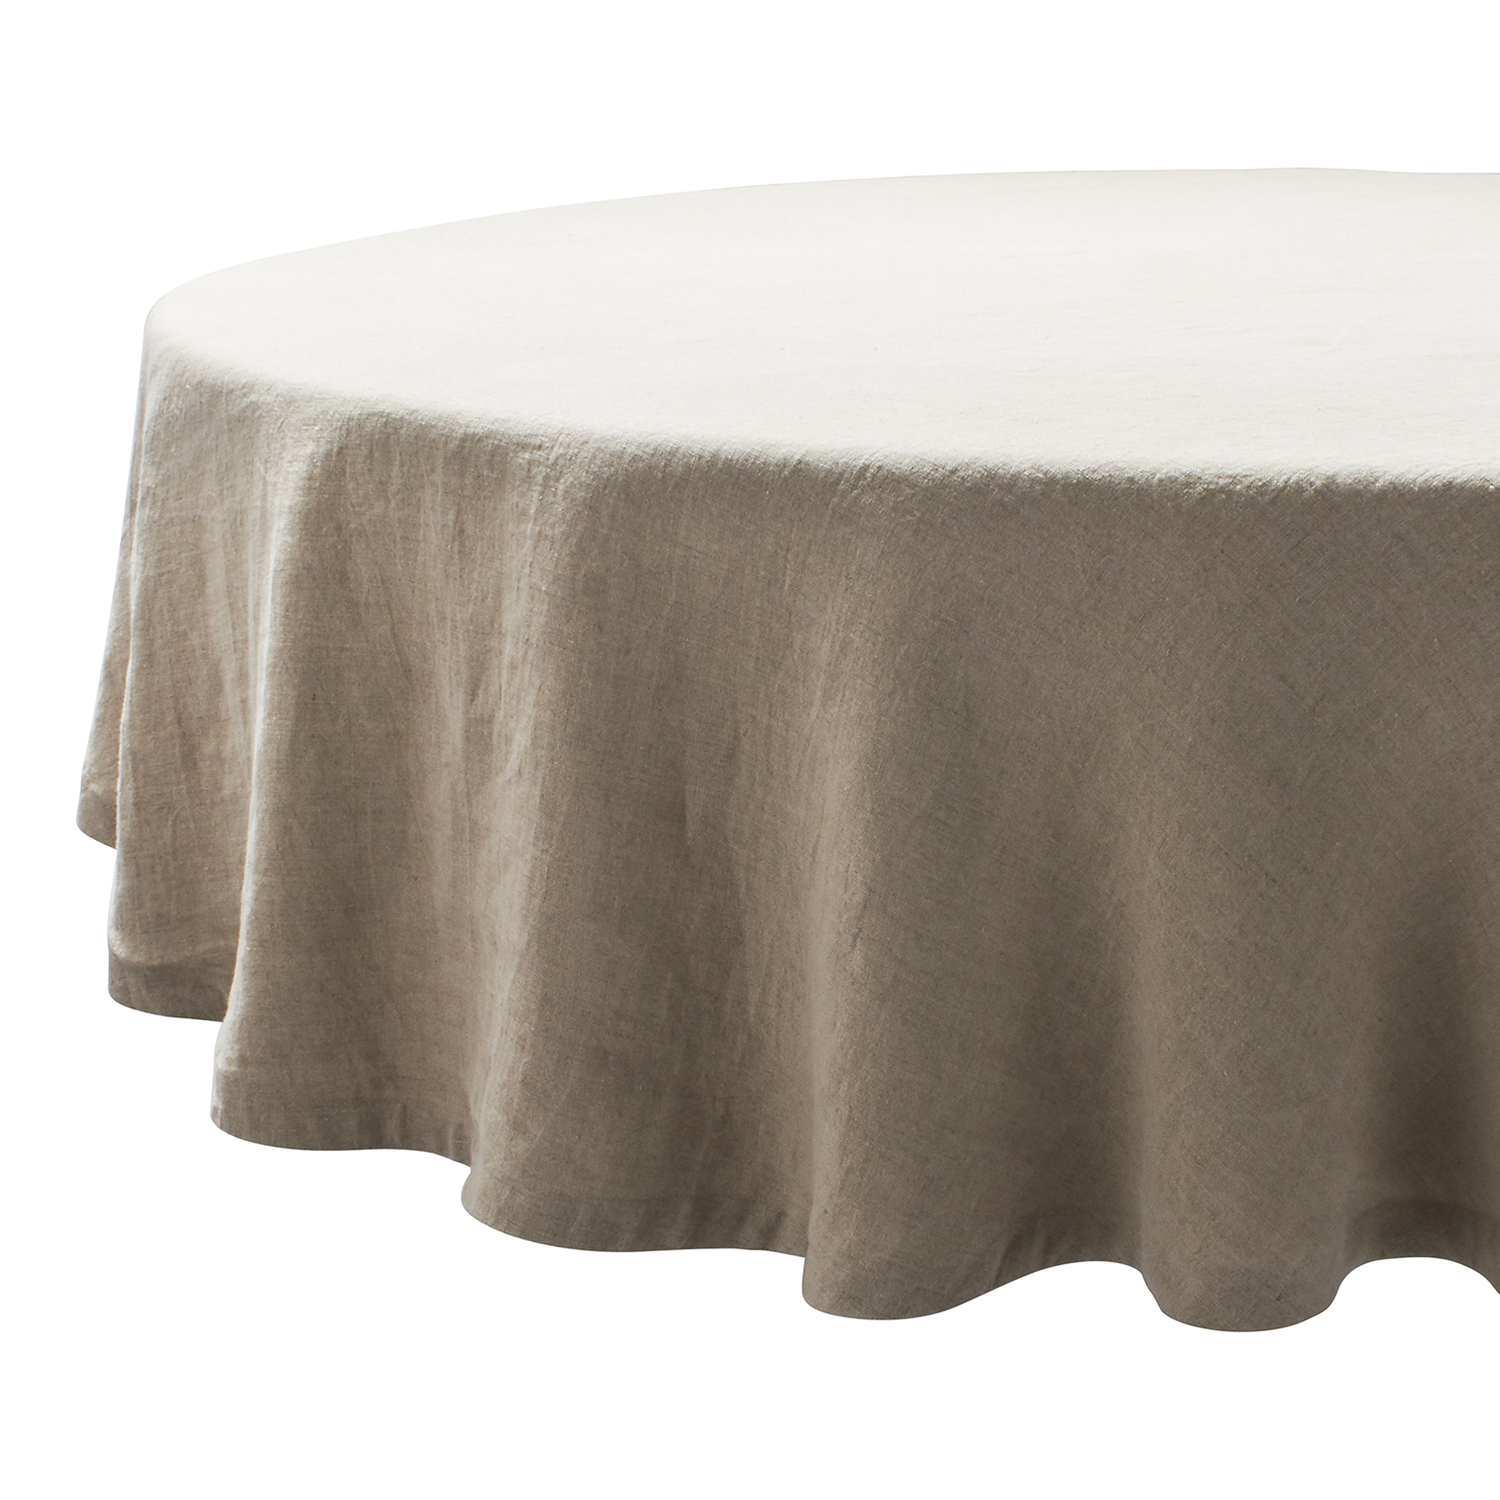 Round Linen Tablecloth 70 Sur La Table, White Linen Tablecloths Round